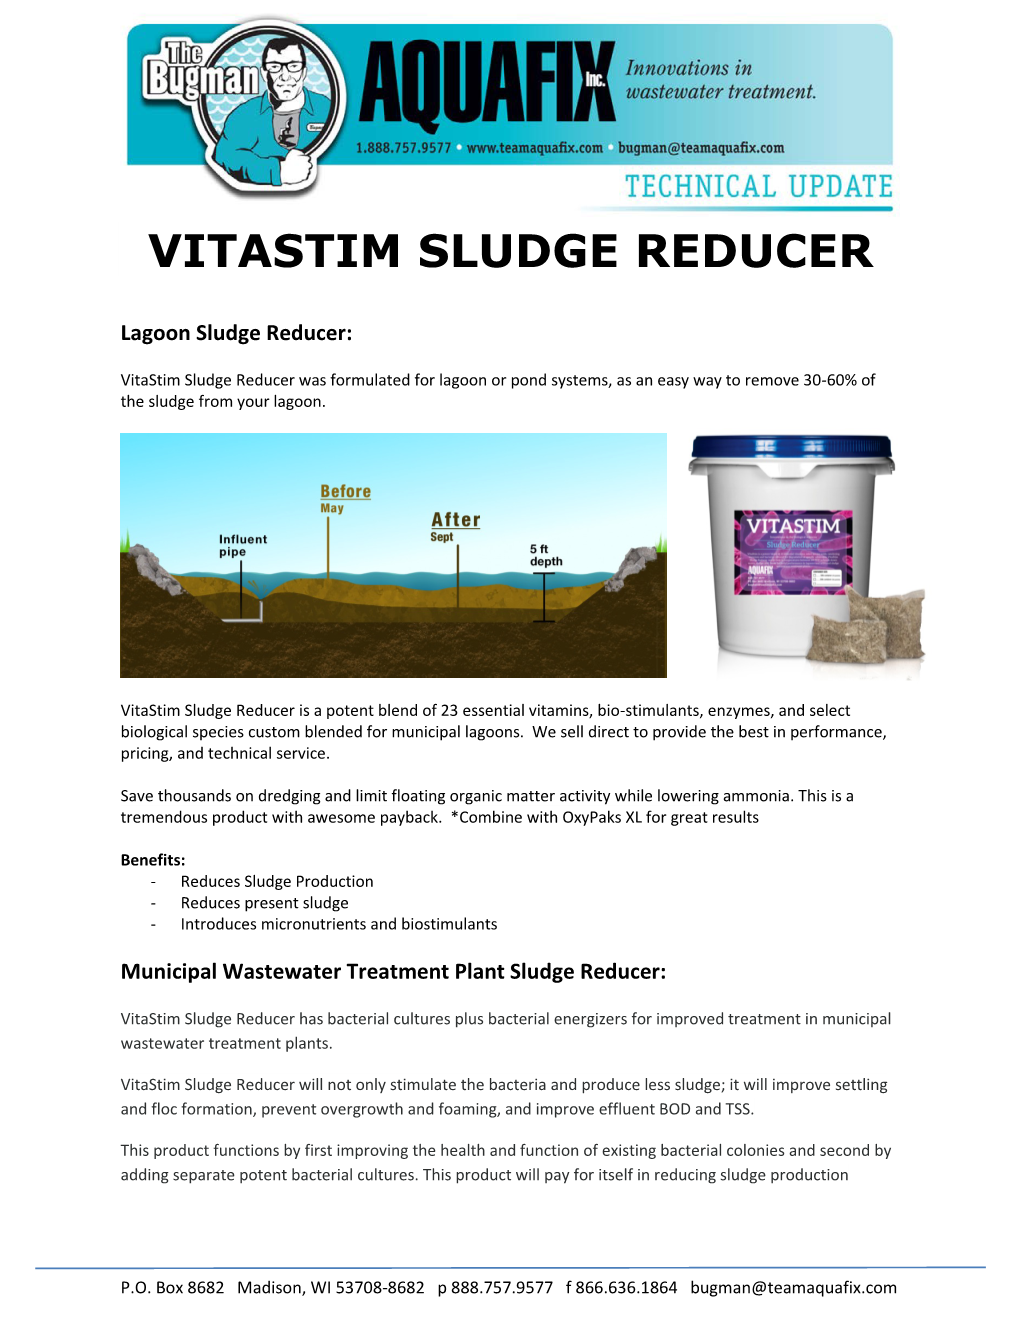 Vitastim Sludge Reducer